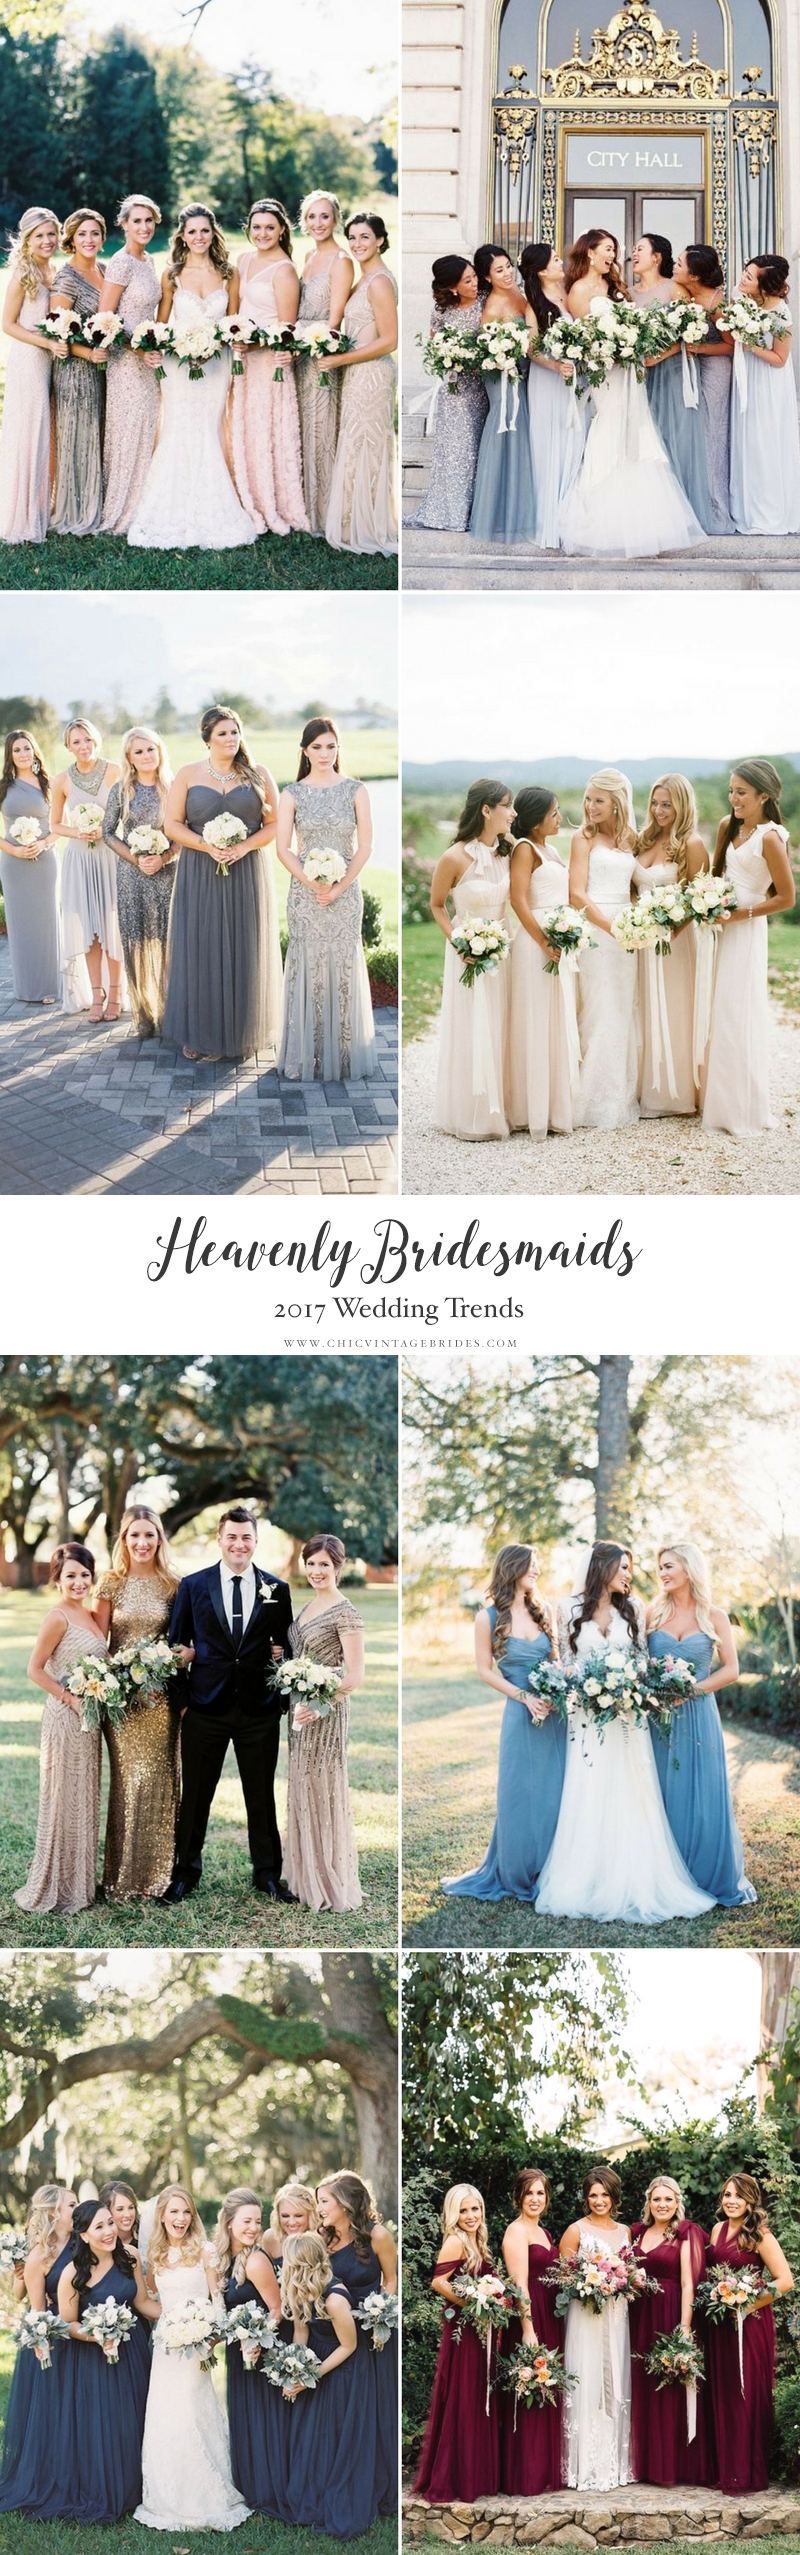 Top Wedding Trends 2017 - Heavenly Bridesmaids